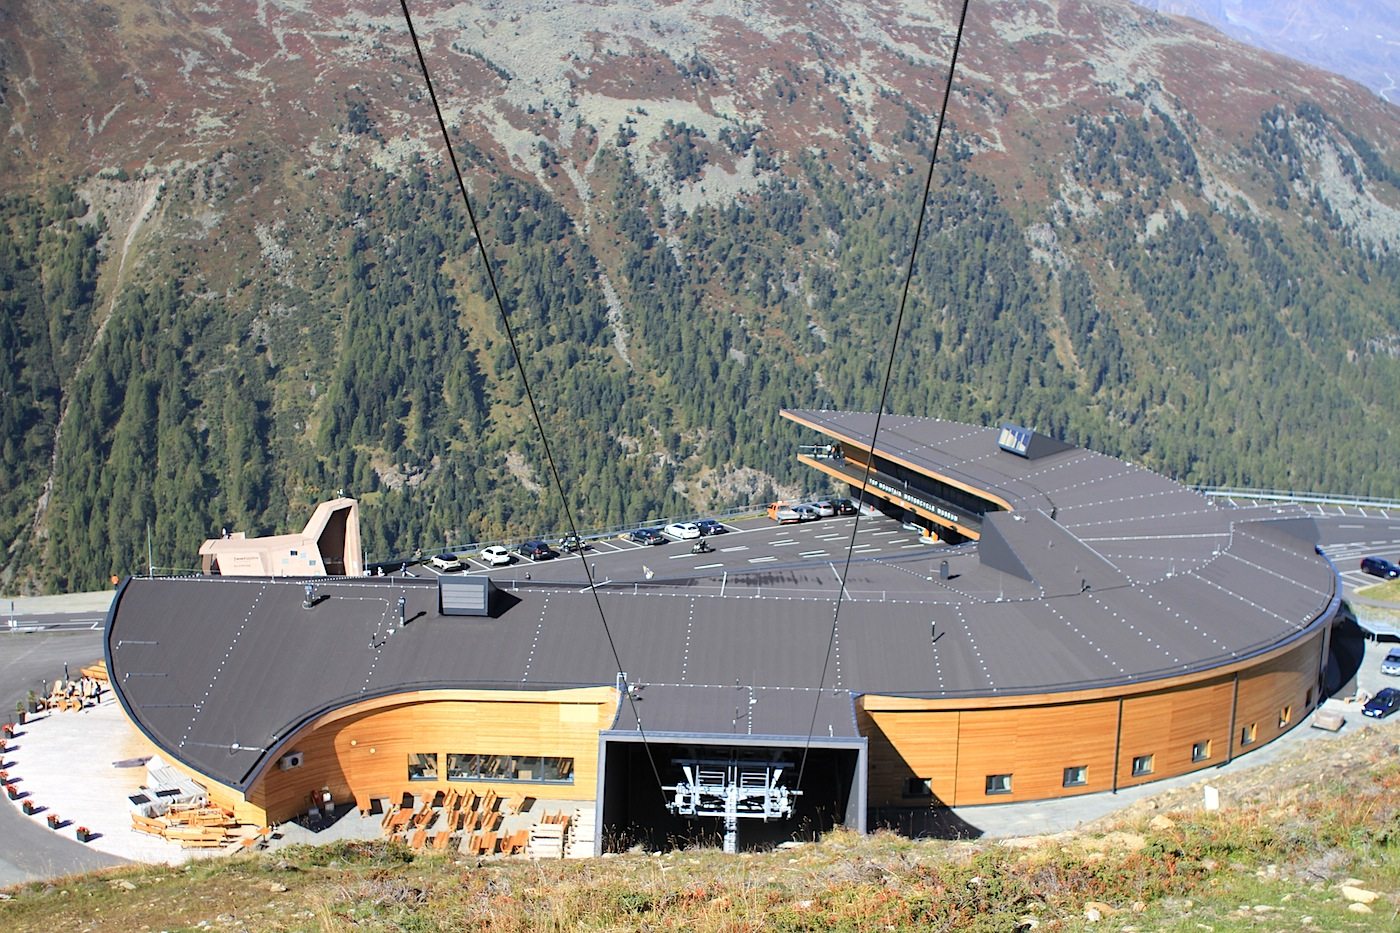 Das Top Mountain X-Crosspoint ist Mautstation, Restaurant, Museum und Gondelstation zugleich. Der verantwortliche österreichische Architekt Michael Brötz entwarf einen geschwungenen Bau, der sich auf die regional-alpine Holzbauweise bezieht. 